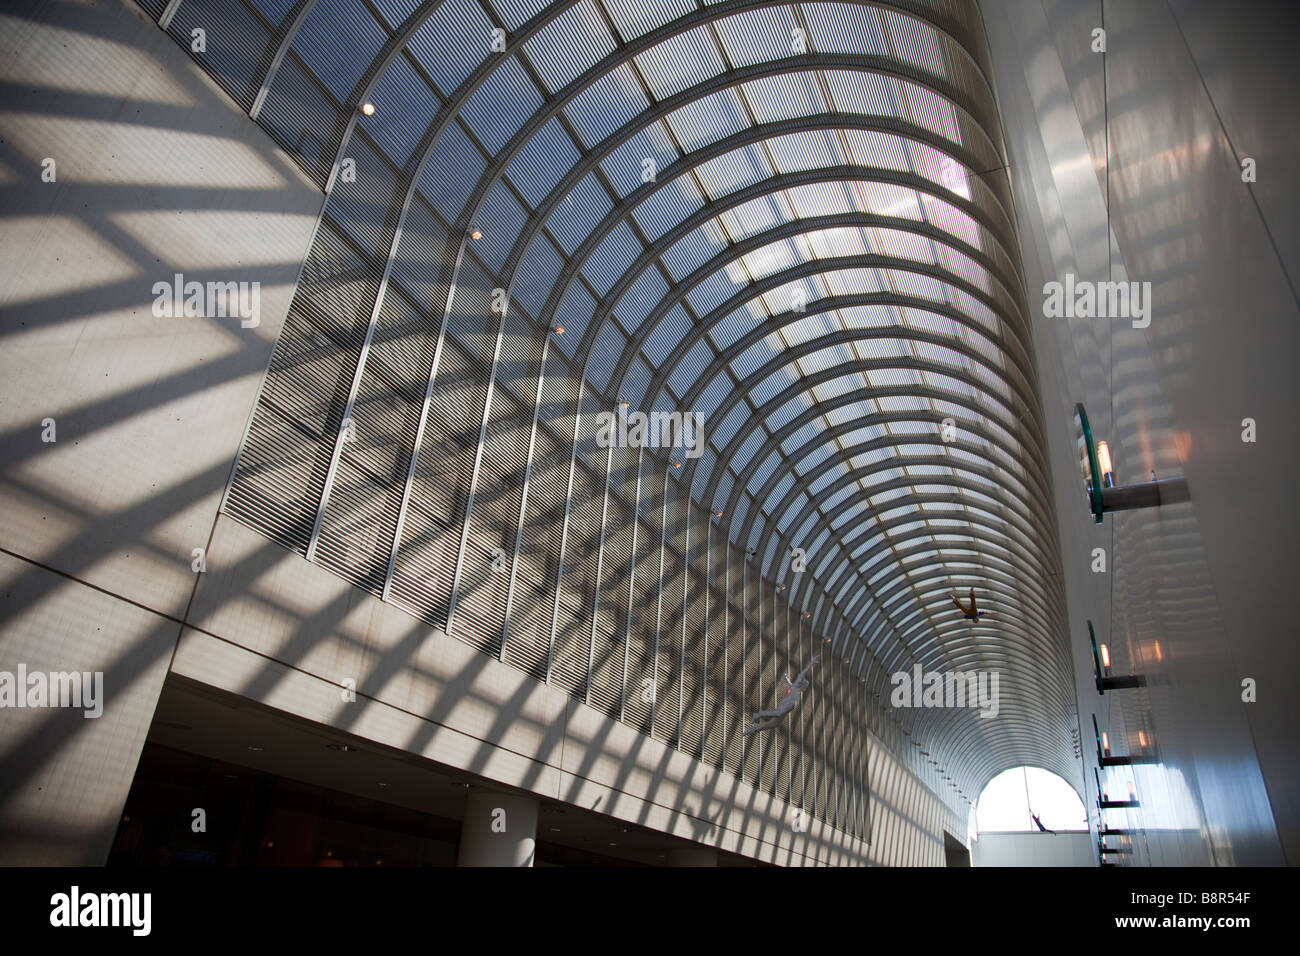 Vue en perspective d'arches motif dans la galerie du Musée des beaux-arts de Boston, MA, USA Banque D'Images